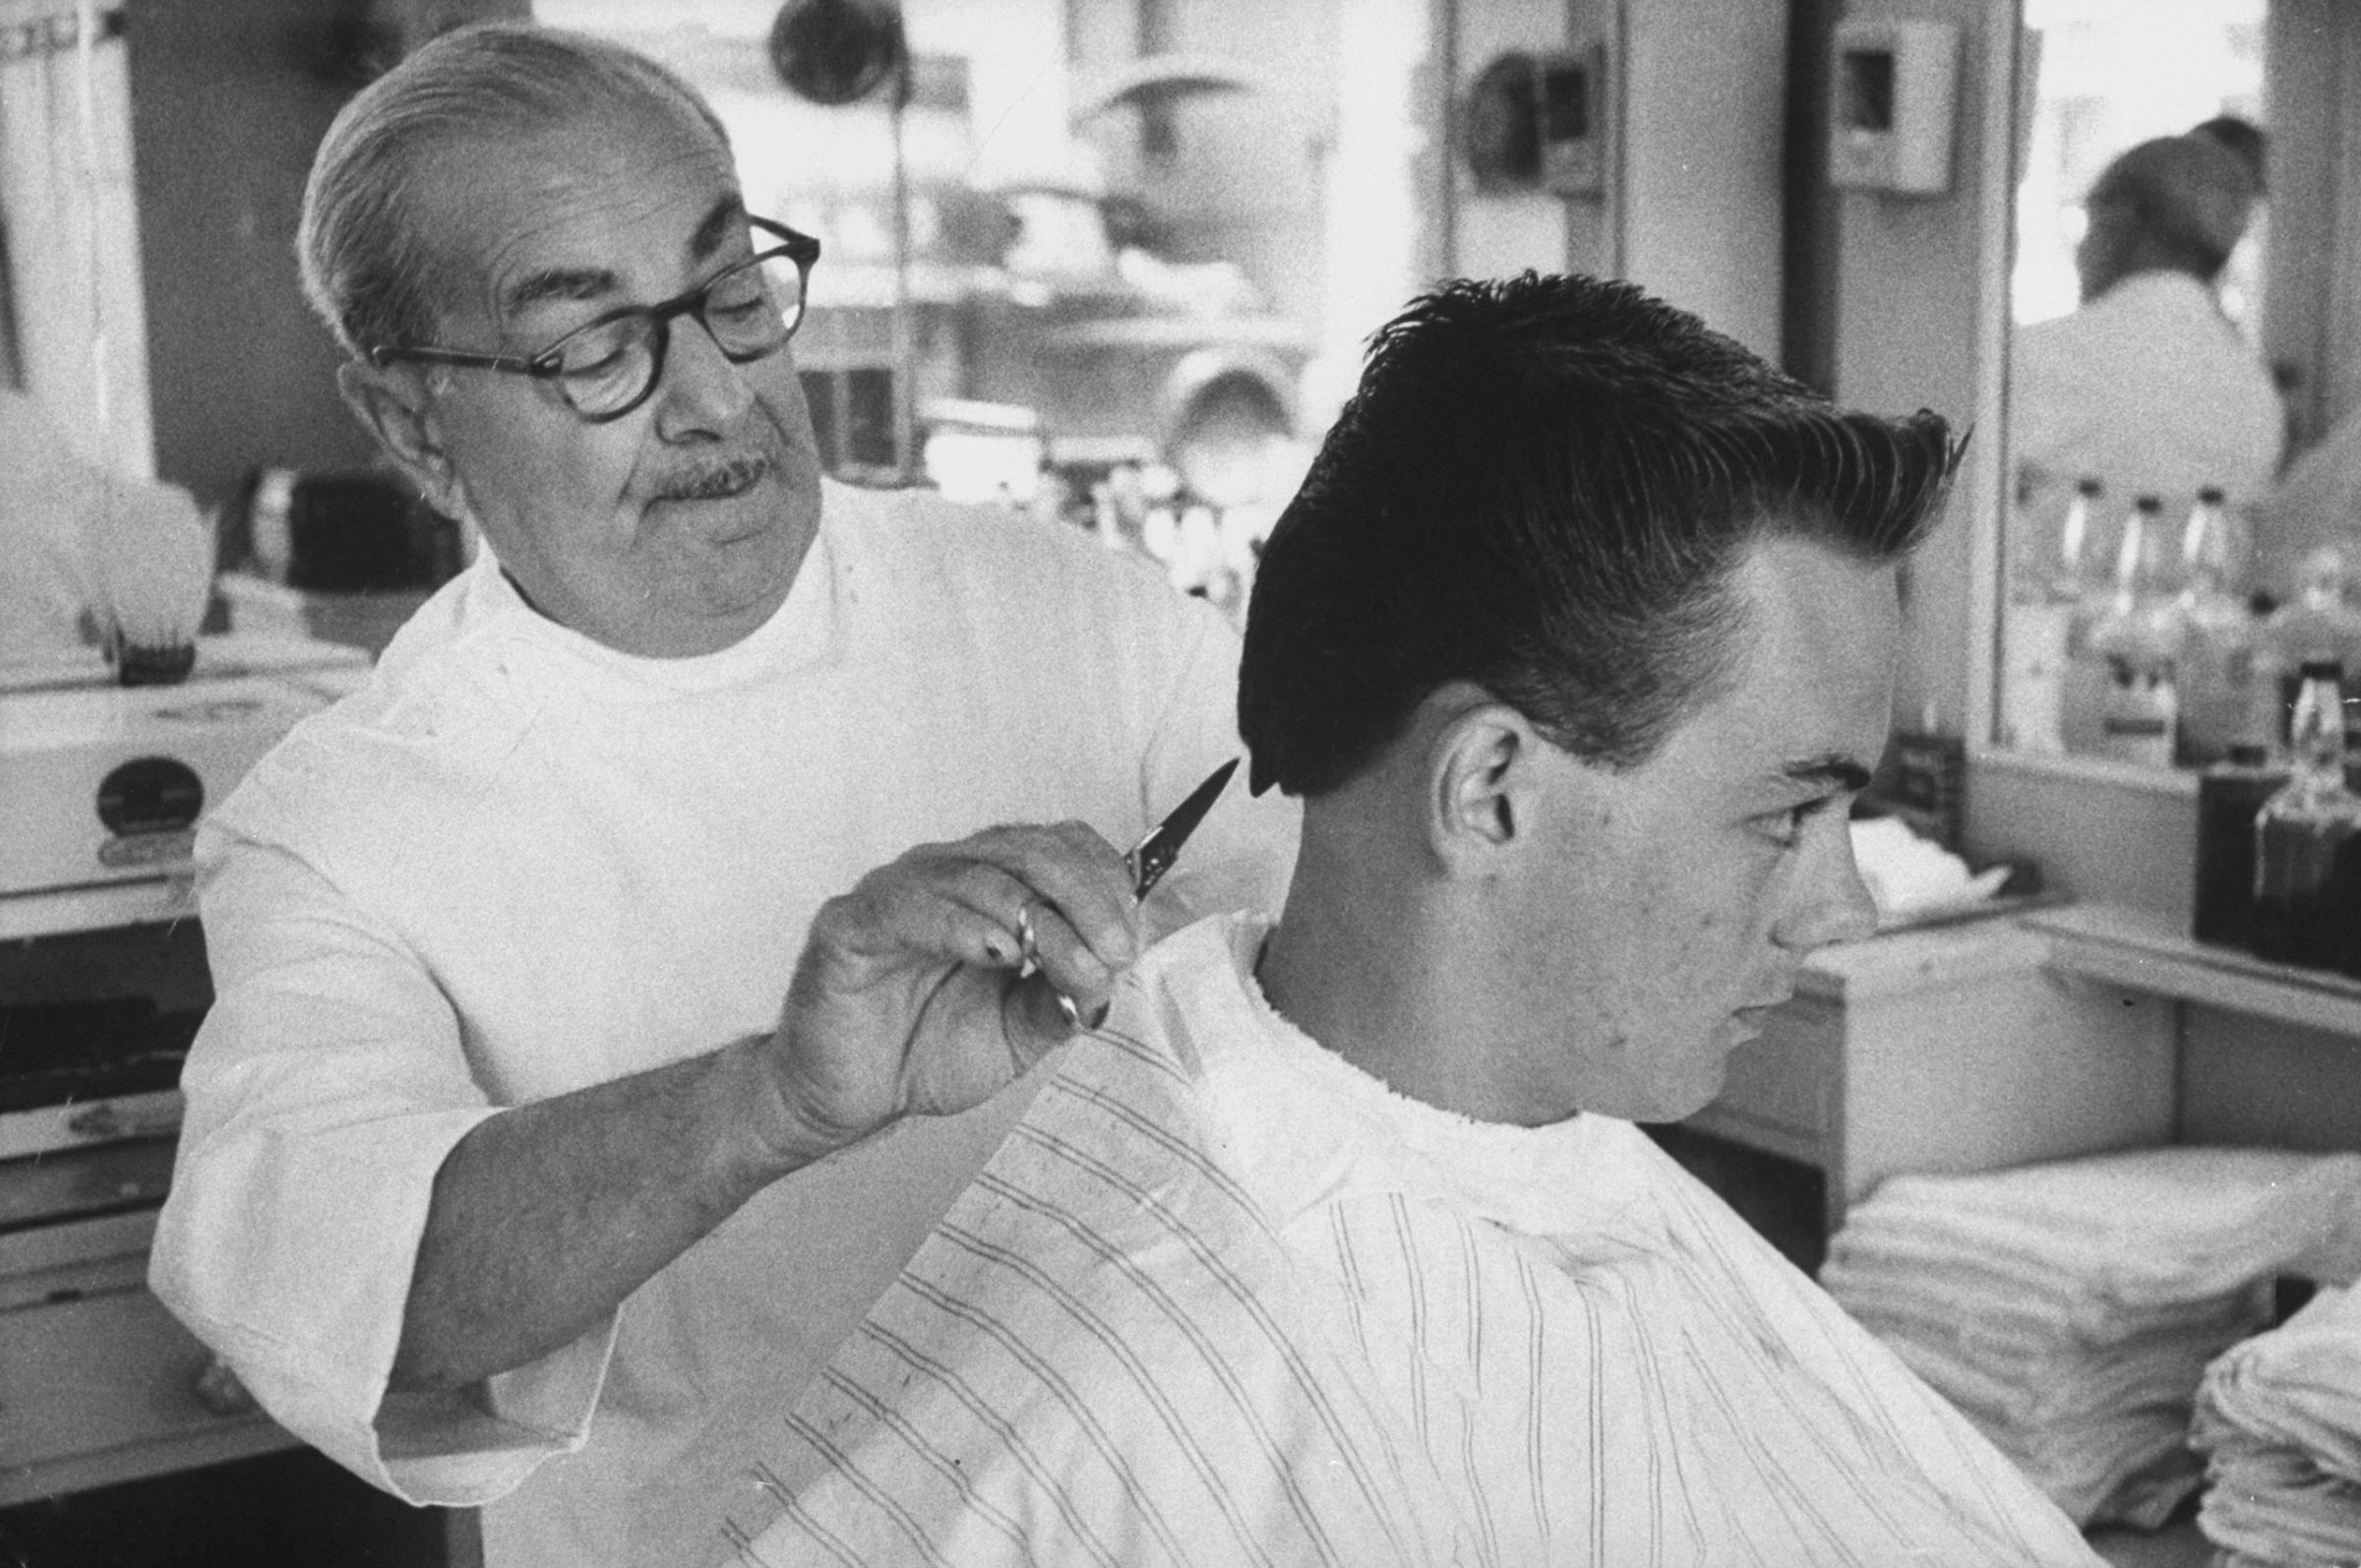 Elvis Presley-style haircut in Florida 1956